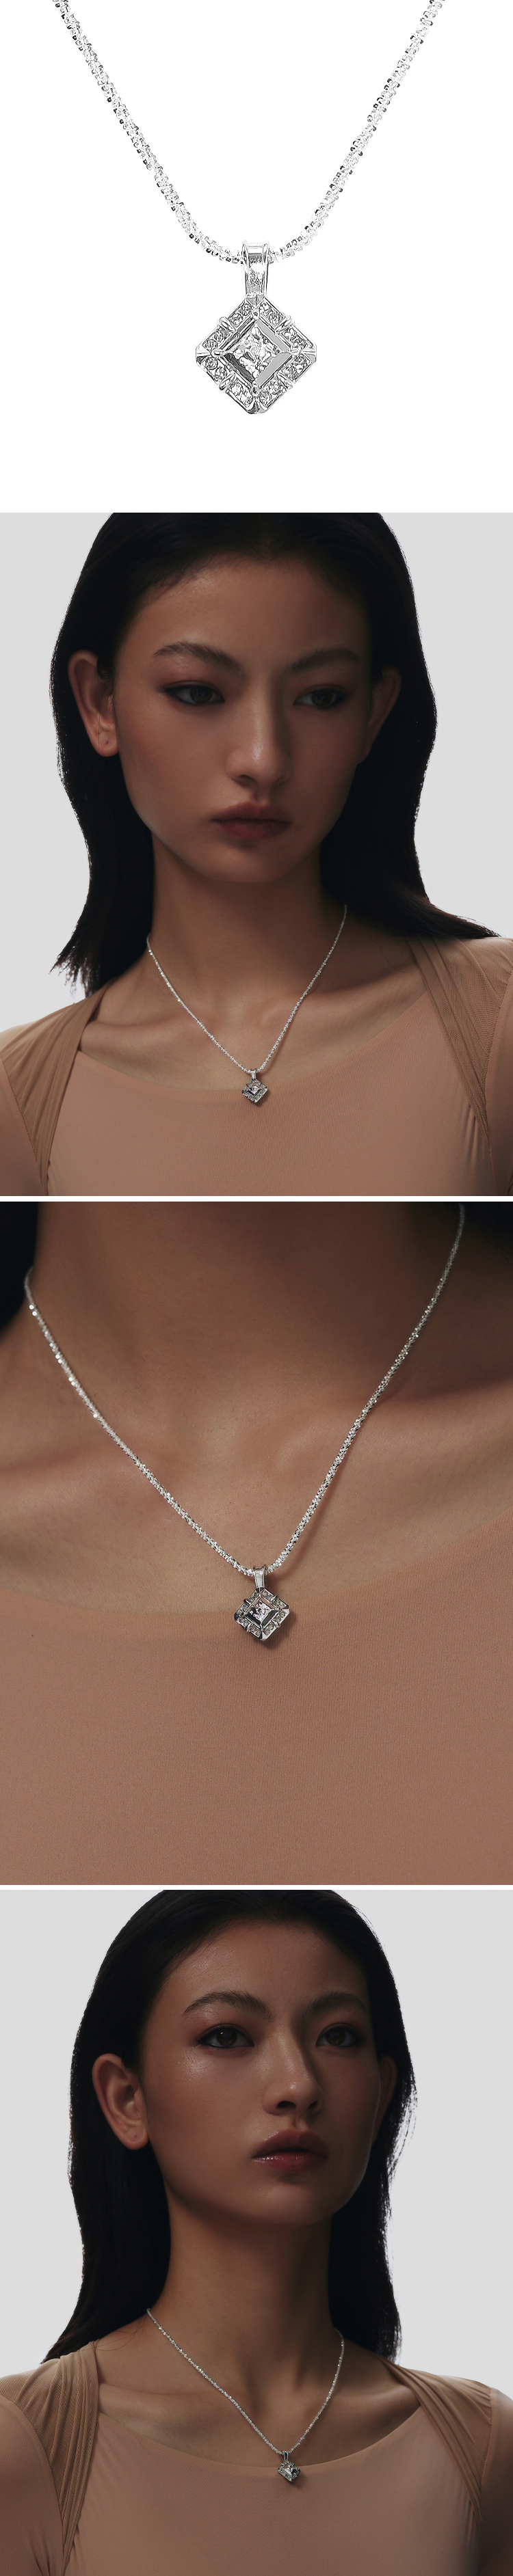 double karat pendant necklace